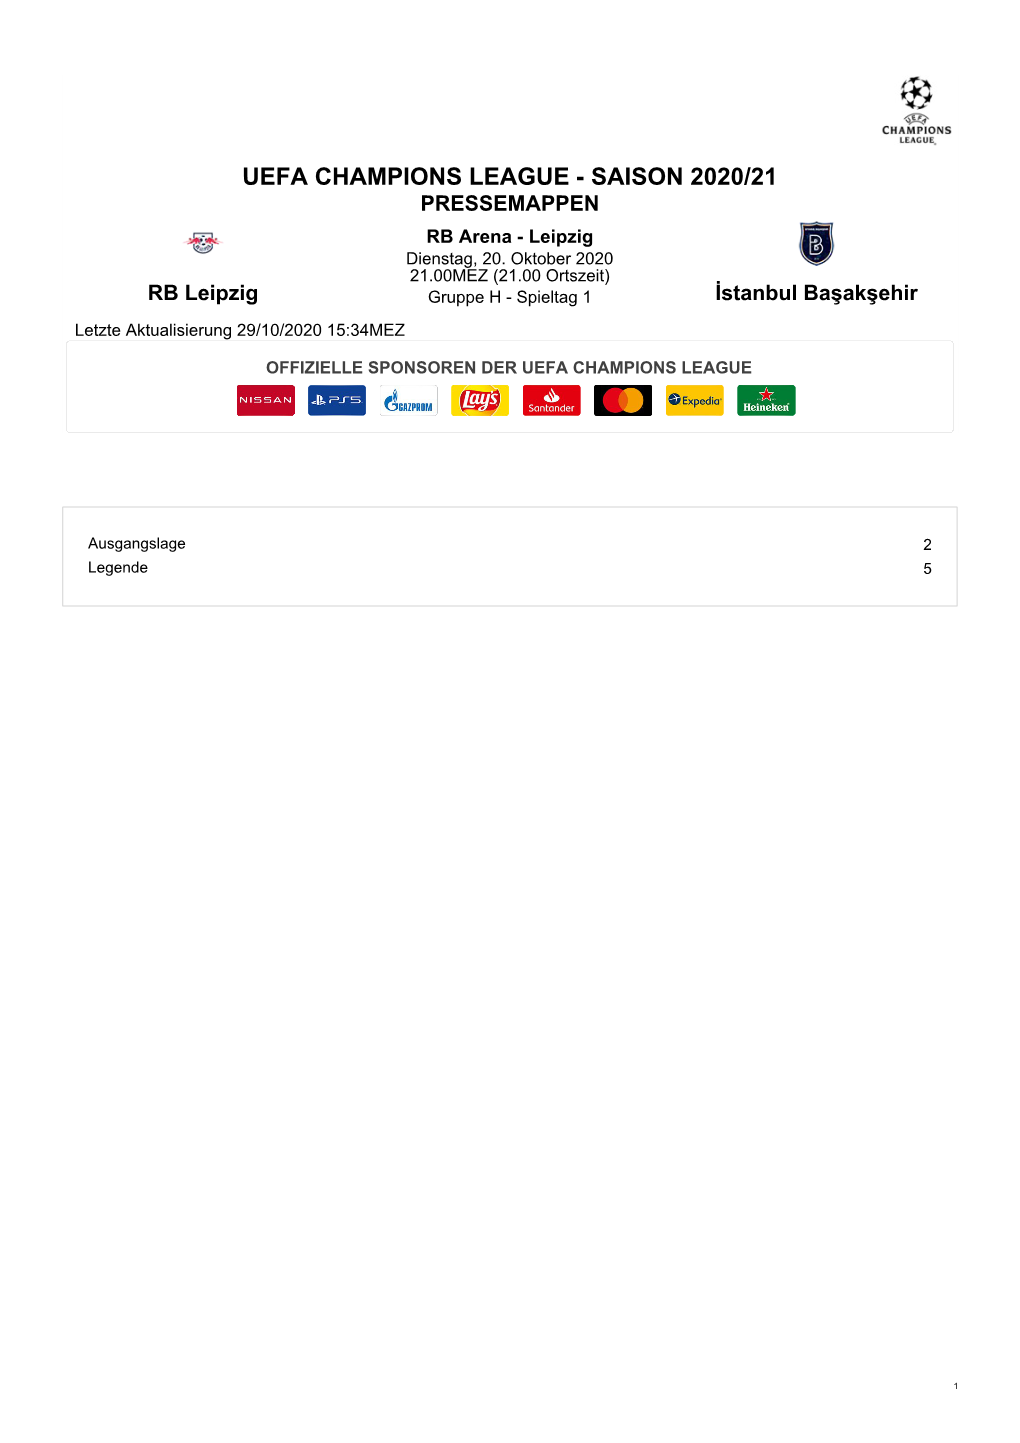 UEFA CHAMPIONS LEAGUE - SAISON 2020/21 PRESSEMAPPEN RB Arena - Leipzig Dienstag, 20